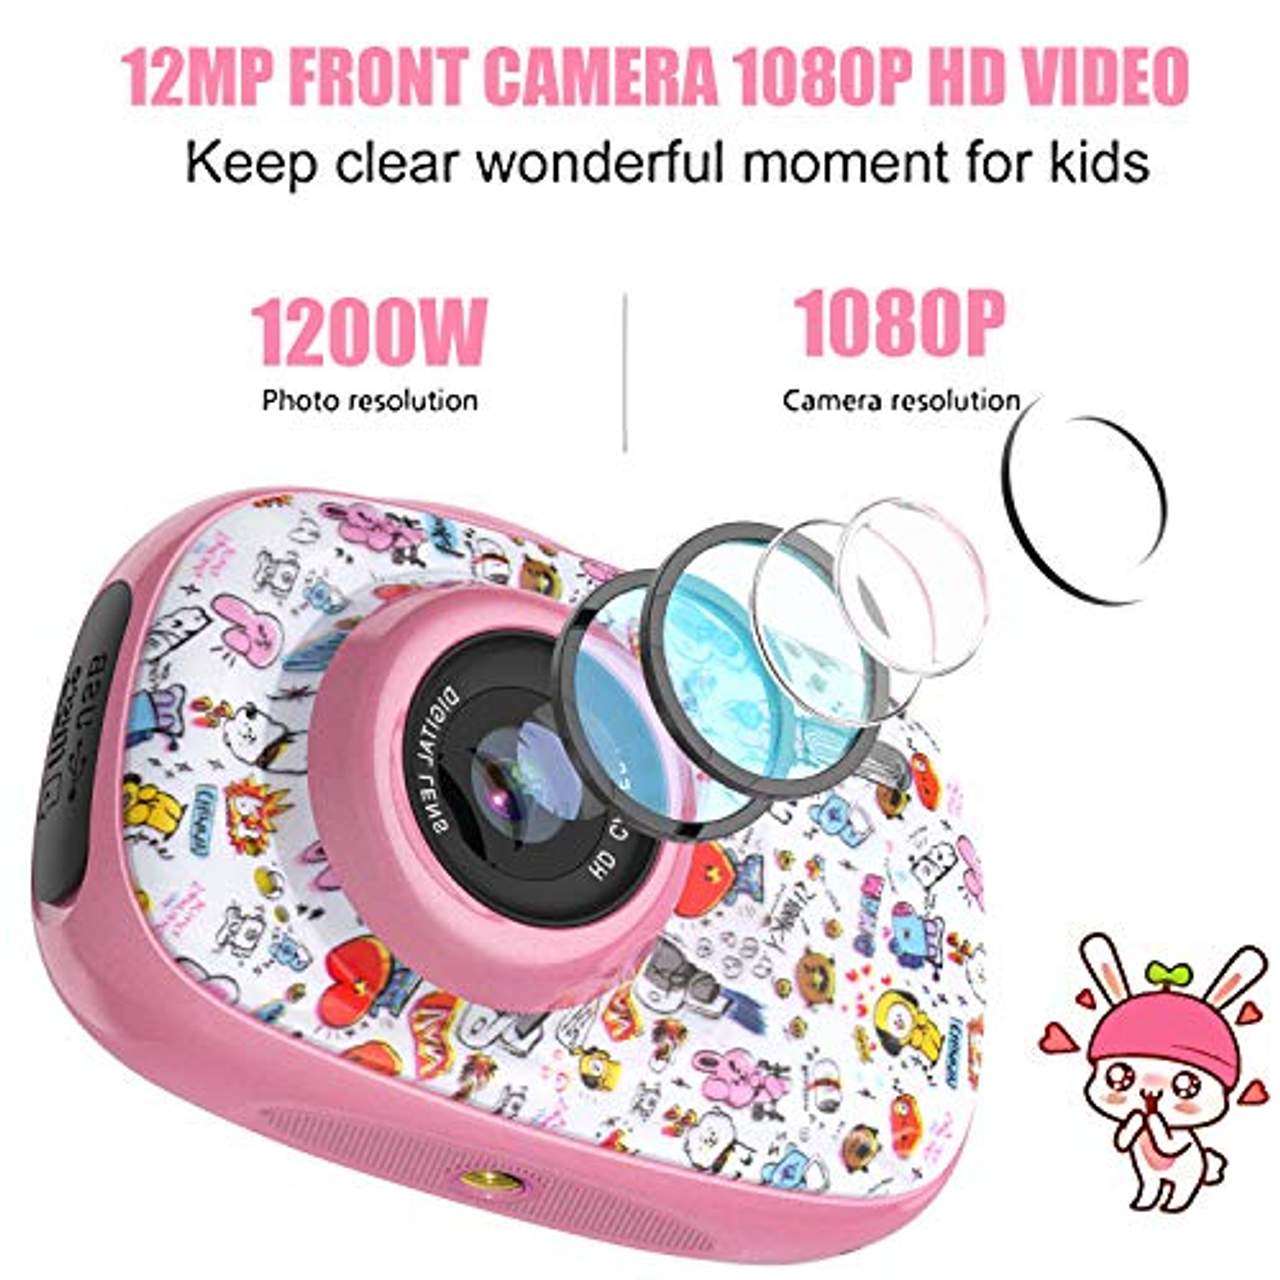 BJLBOJEY Kinder Kamera 12MP 1080P HD Video Digitalkamera